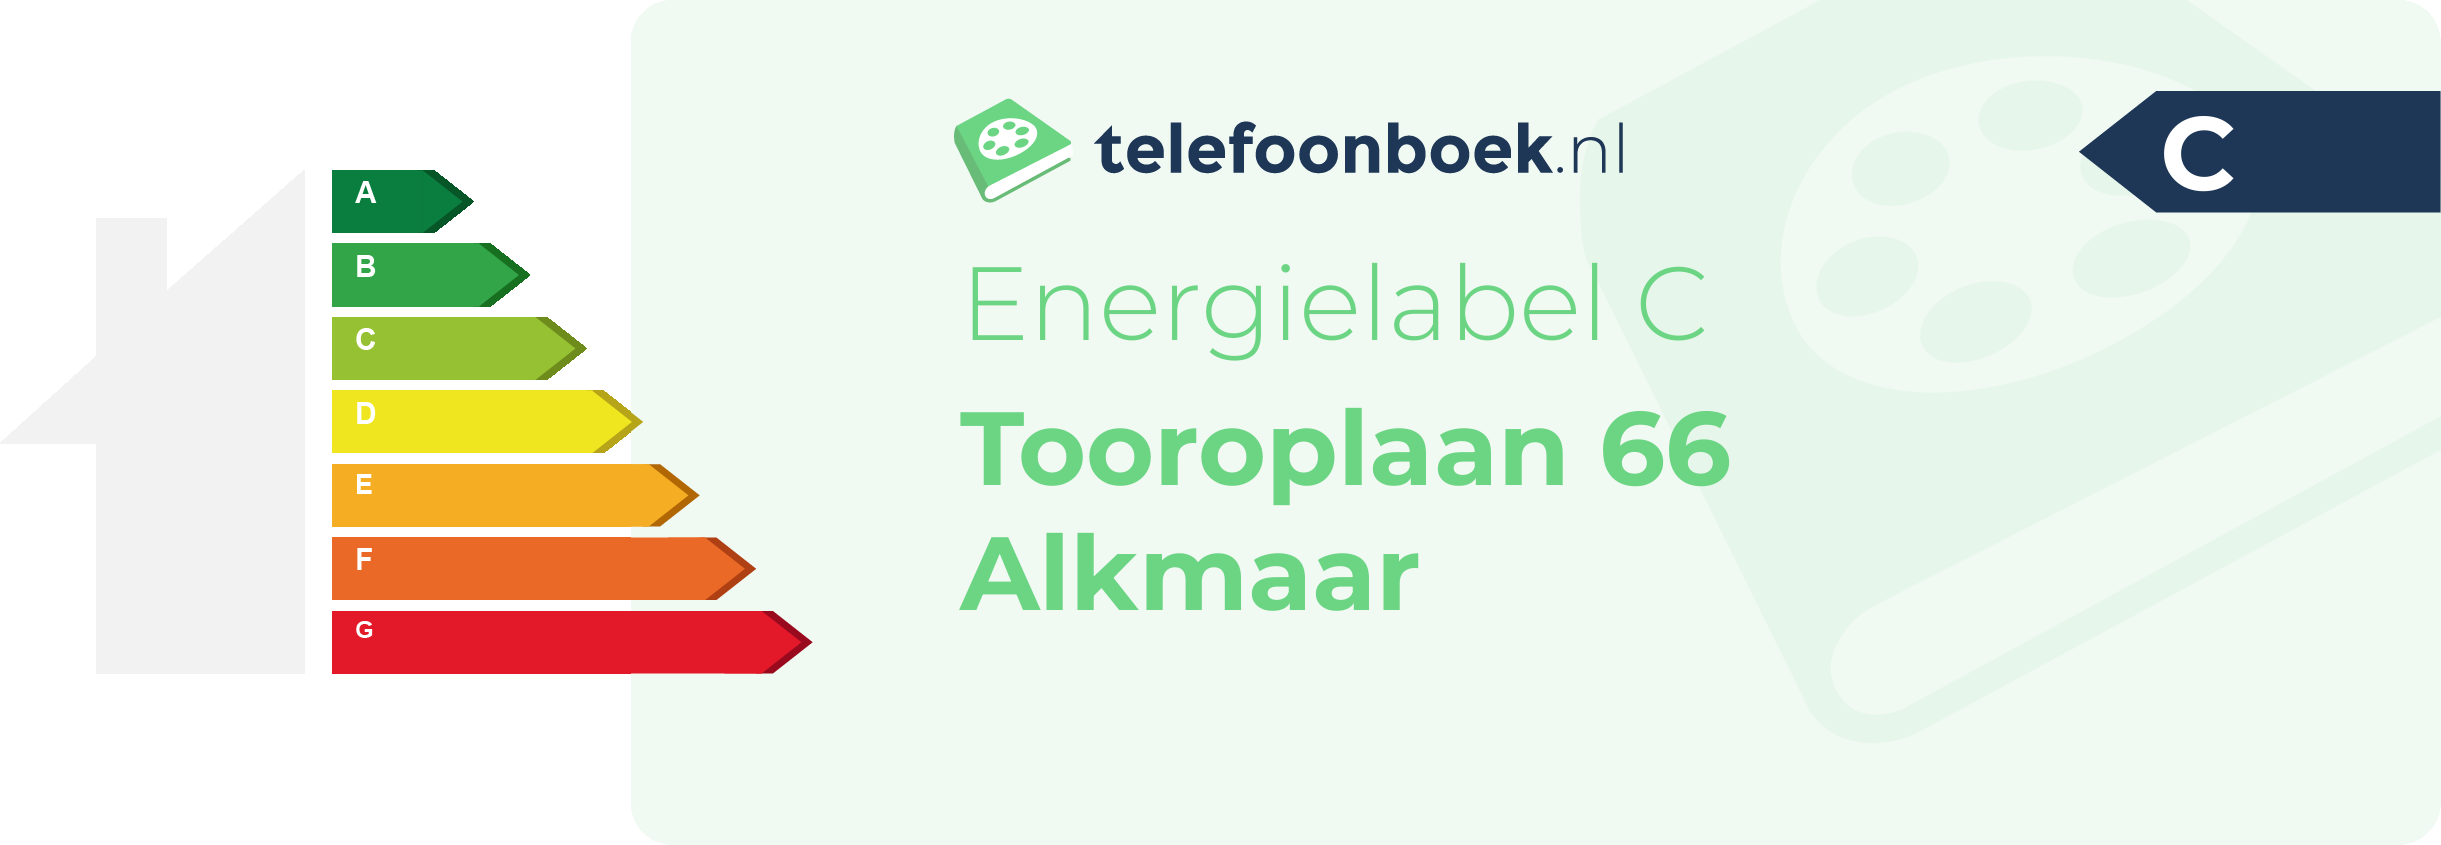 Energielabel Tooroplaan 66 Alkmaar